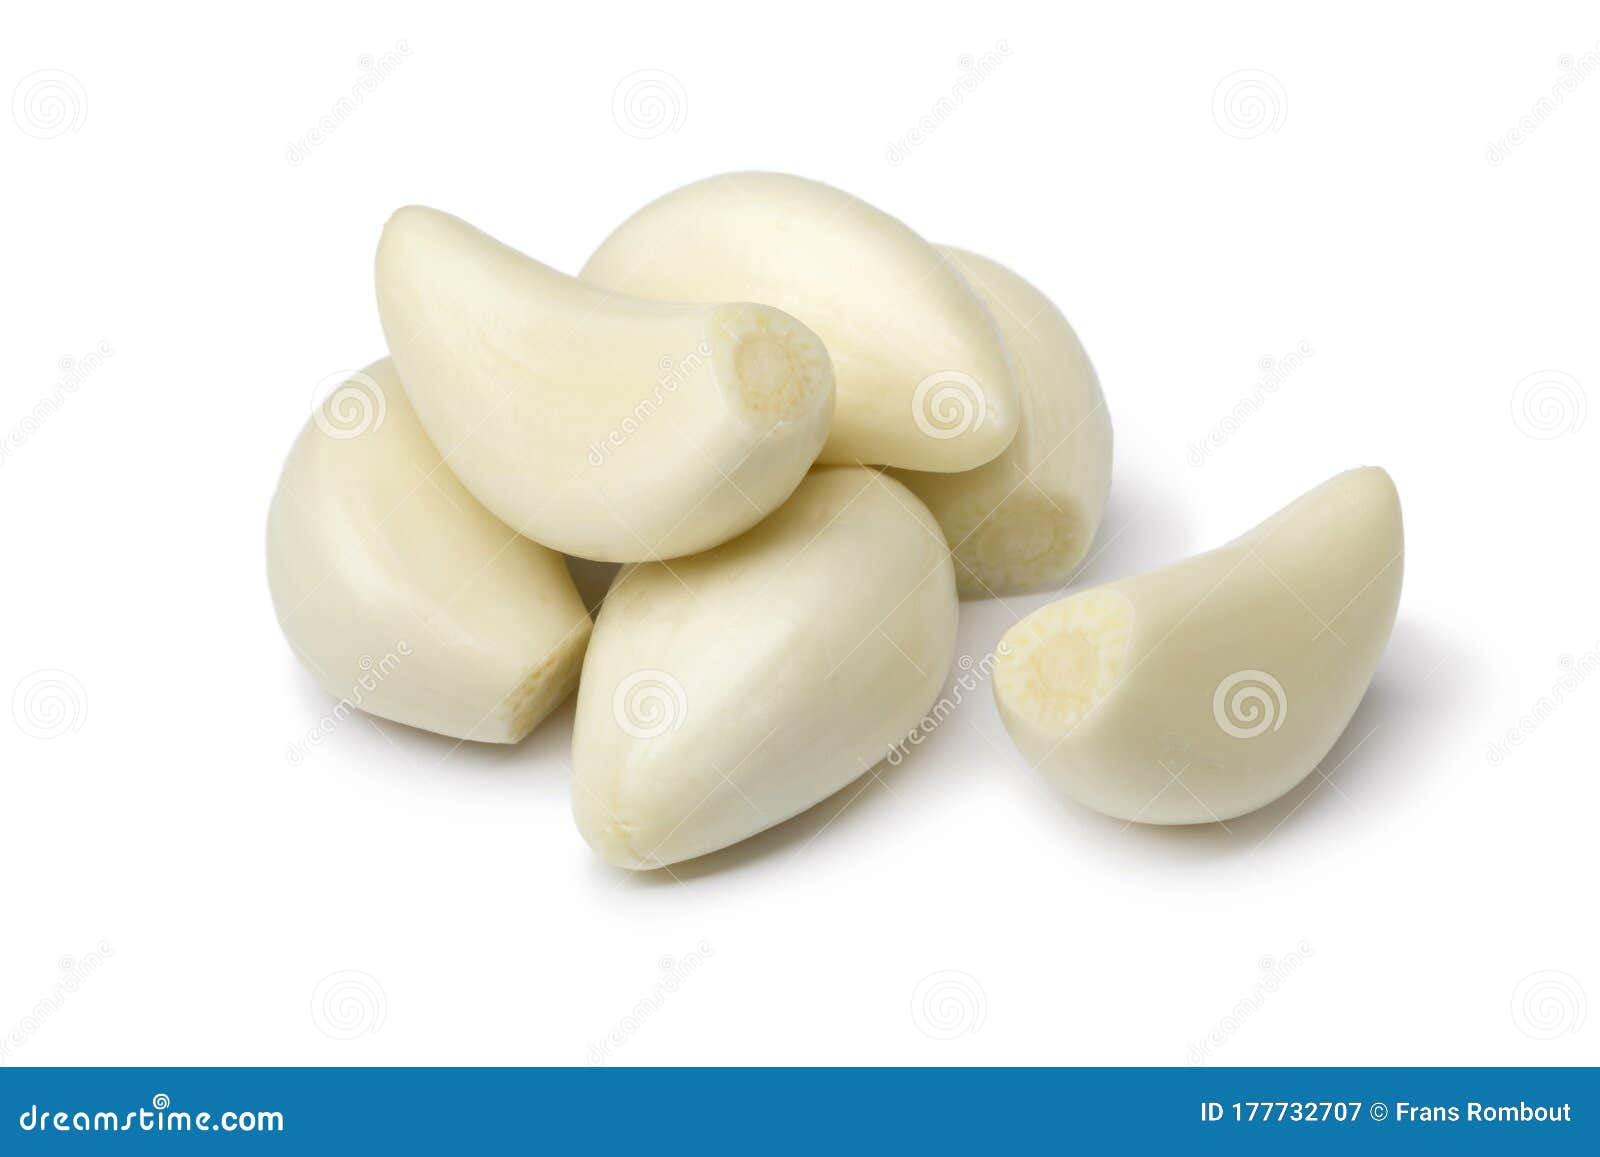 fresh whole peeled garlic cloves